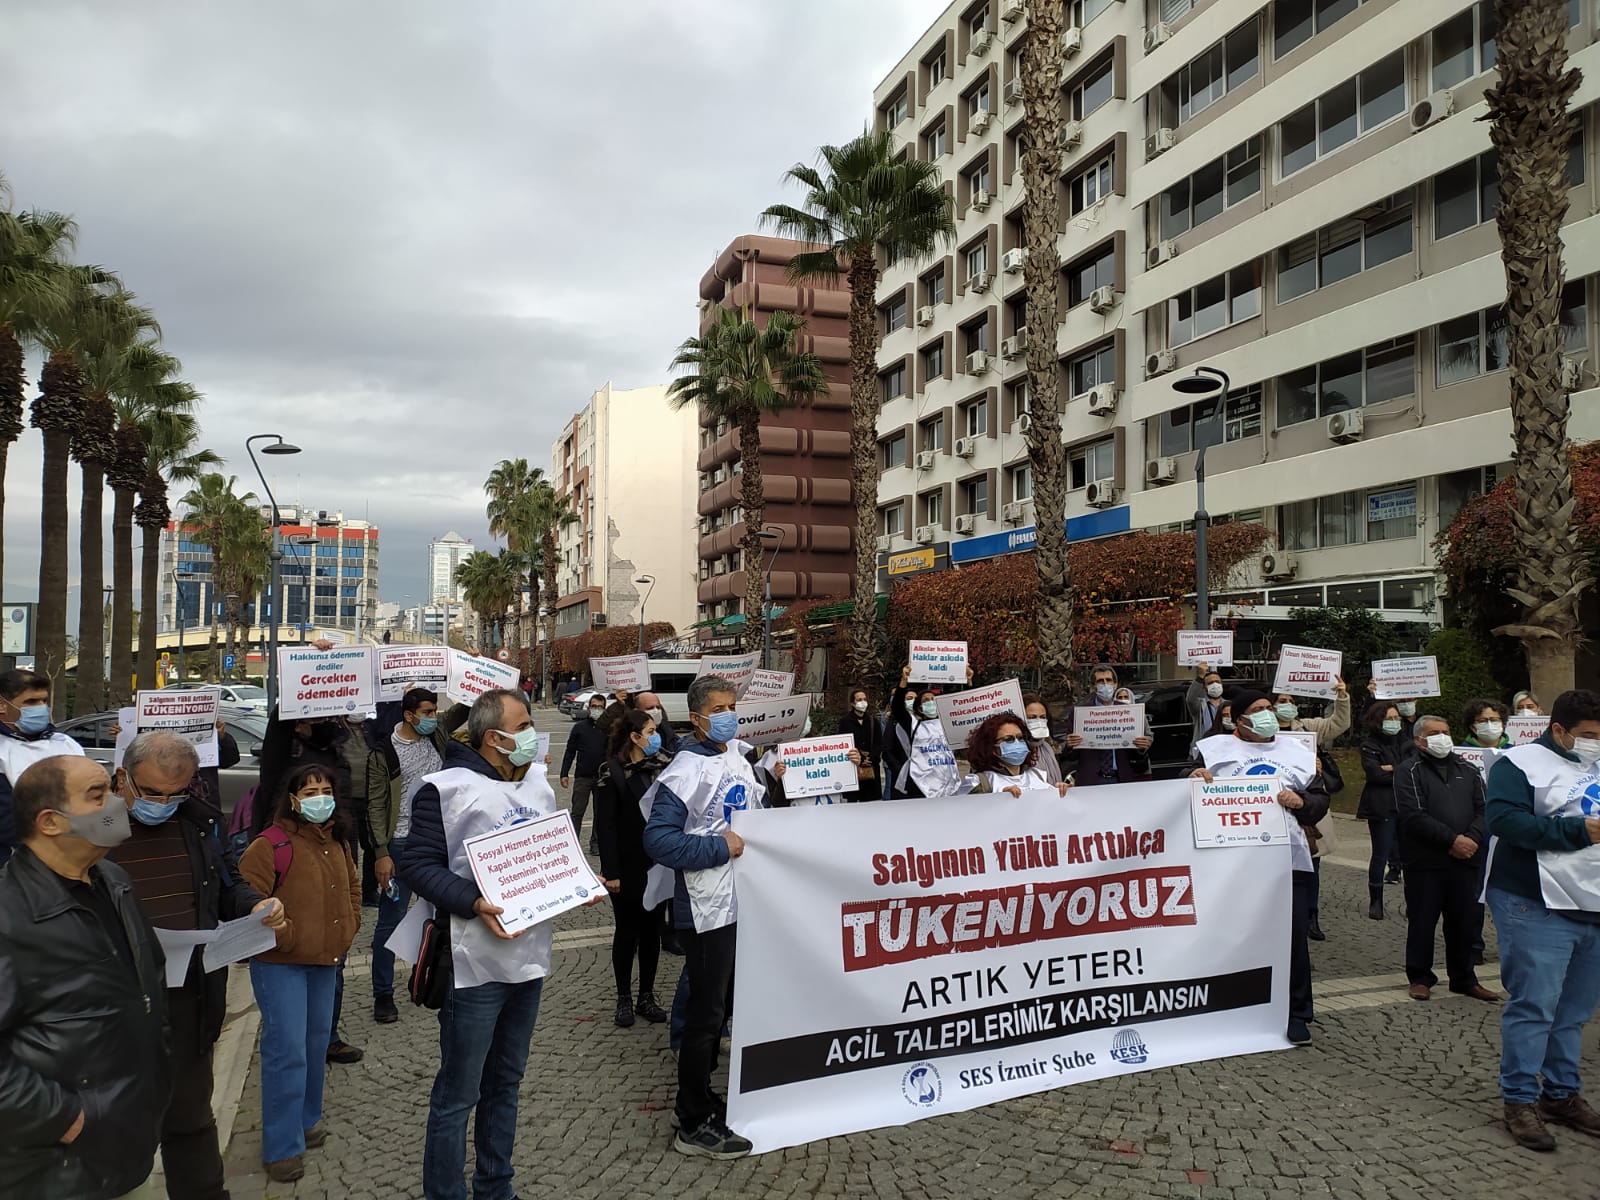 İzmir Şubemiz: Salgının Yükü Arttıkça Tükeniyoruz! Artık Yeter, Taleplerimiz Karşılansın